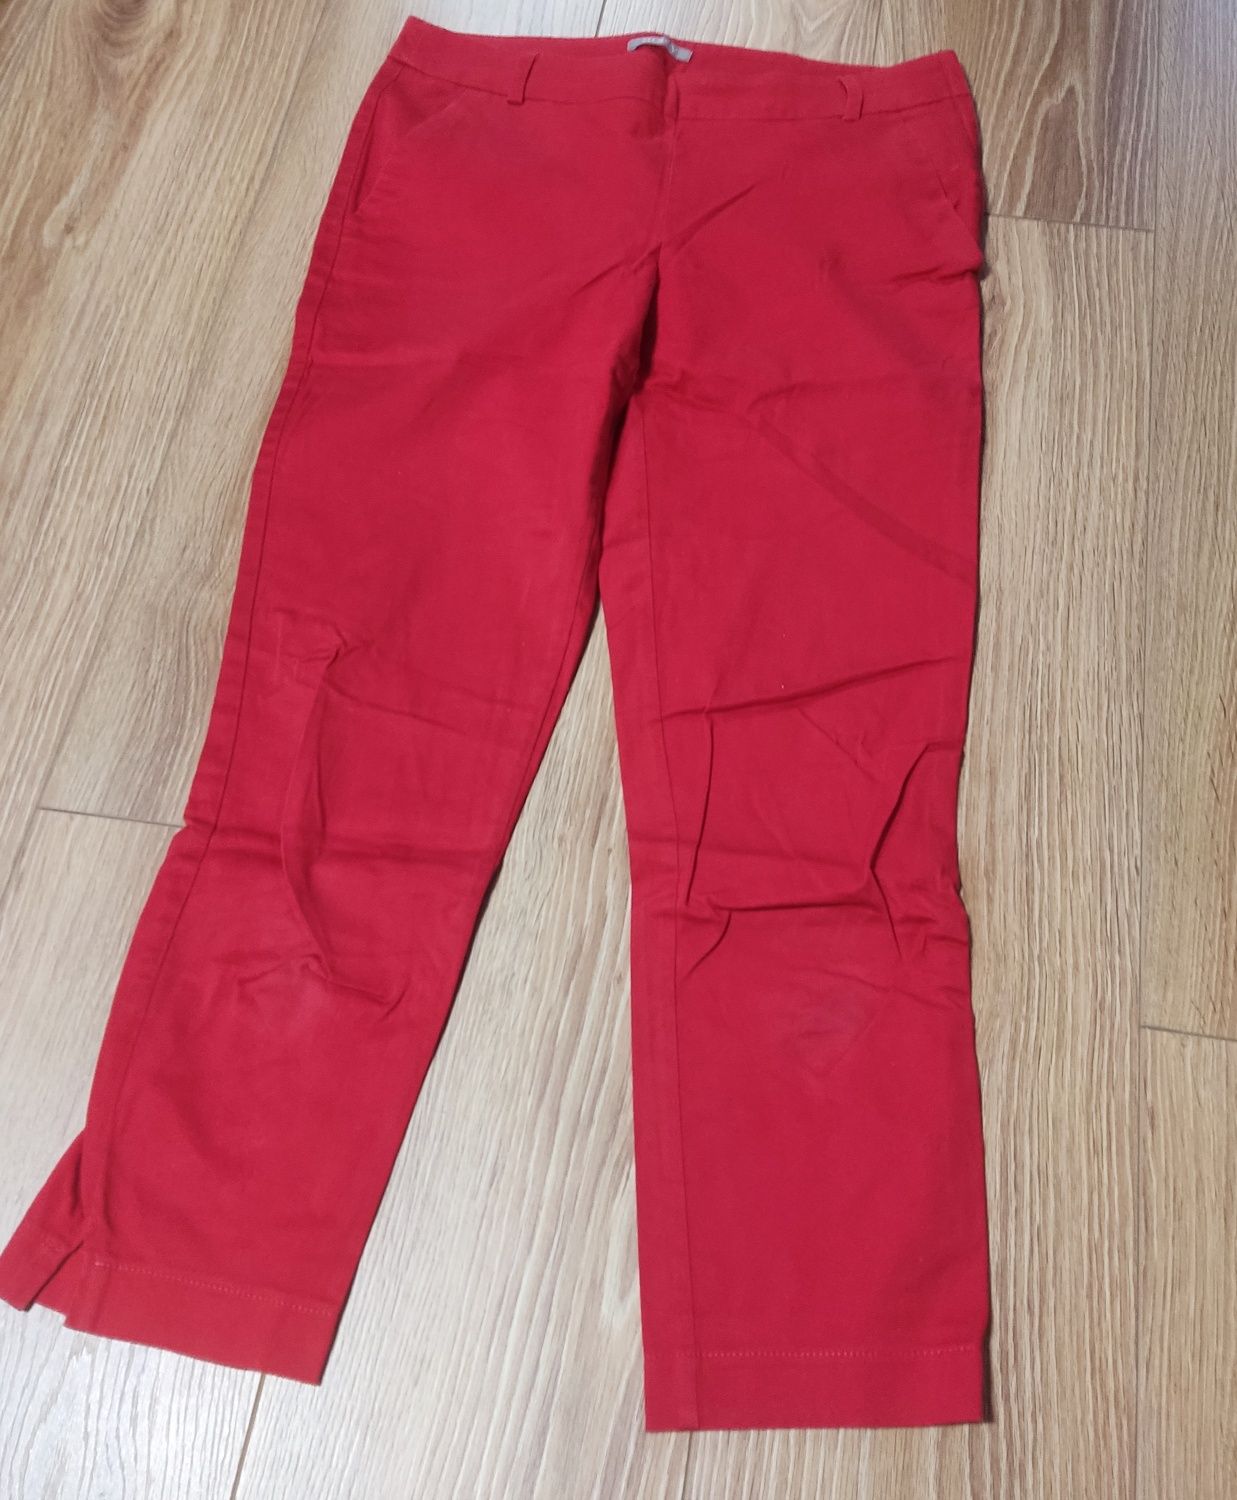 Spodnie czerwone, Orsay